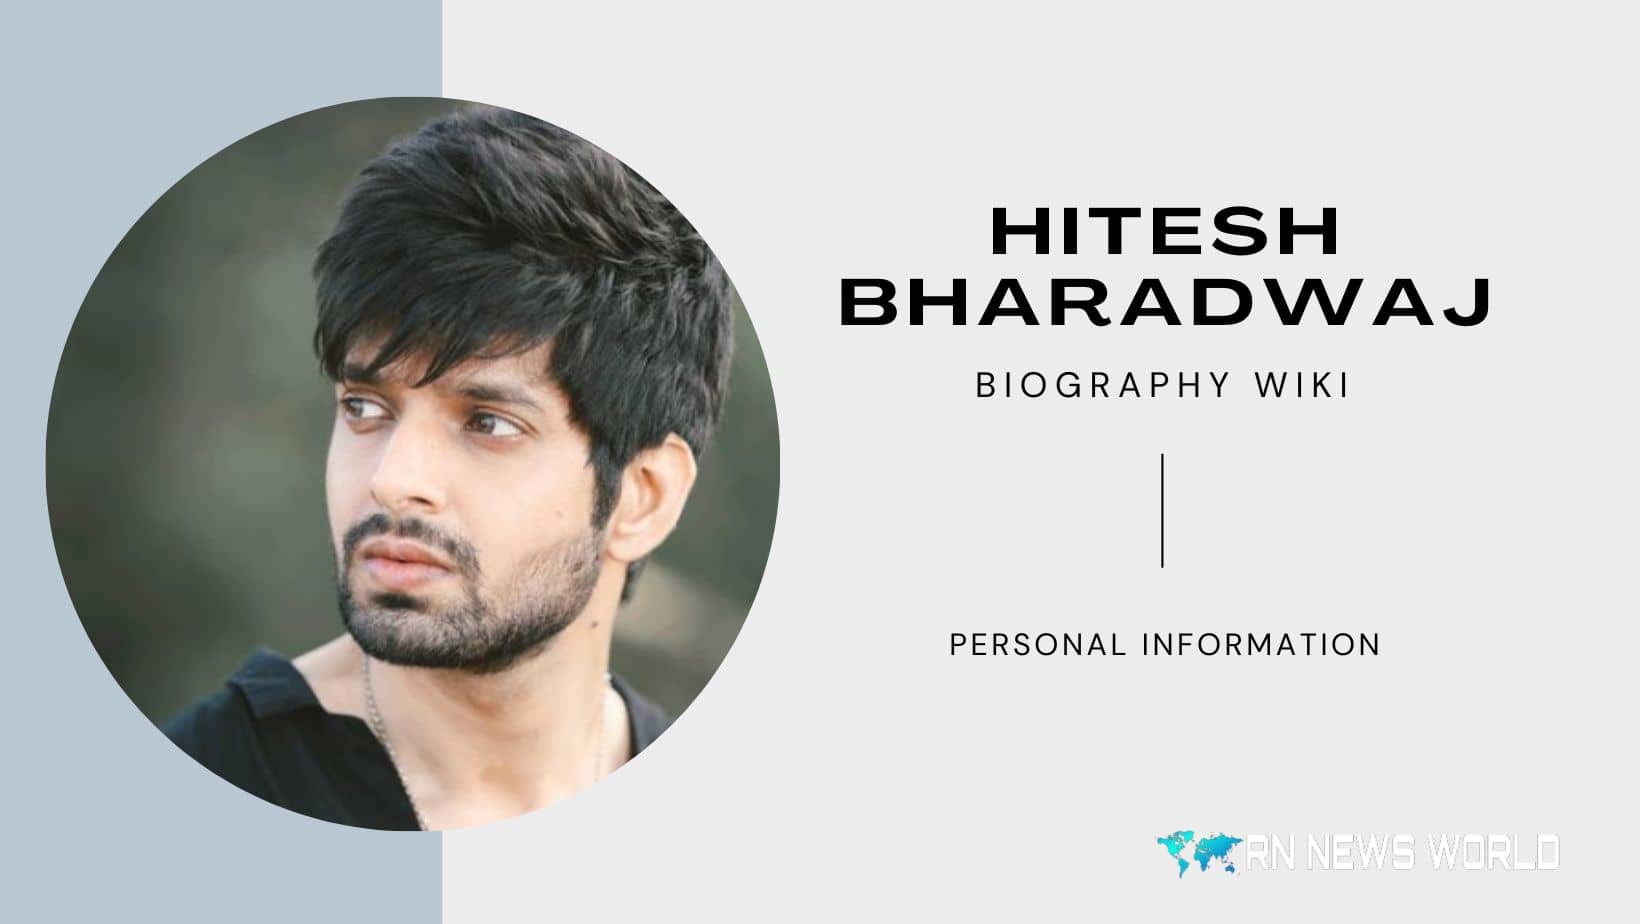 Hitesh Bharadwaj Biography